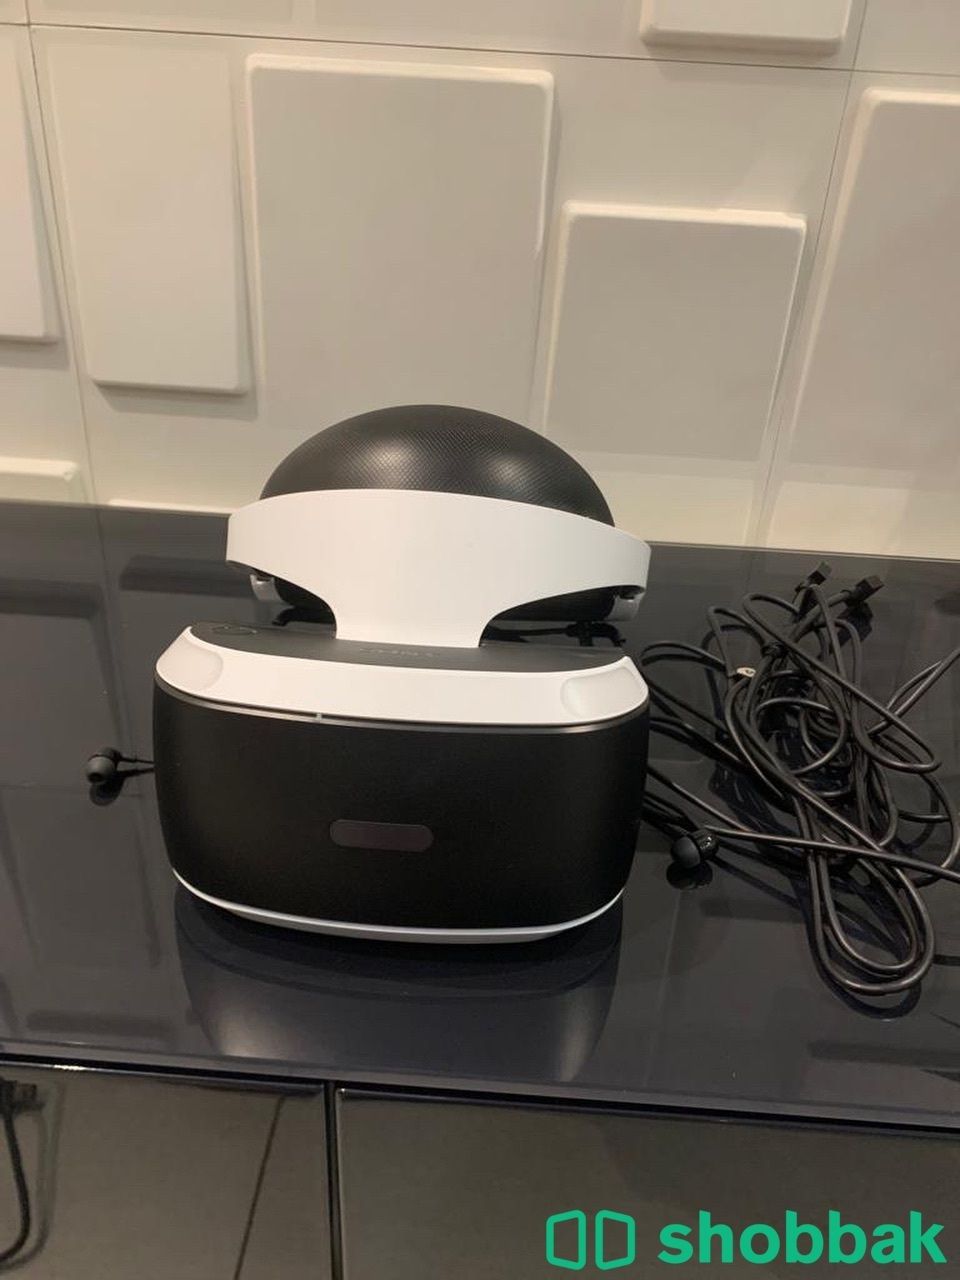 VR playstation for sale|نظارة واقع افتراضي للبيع جديدة  Shobbak Saudi Arabia